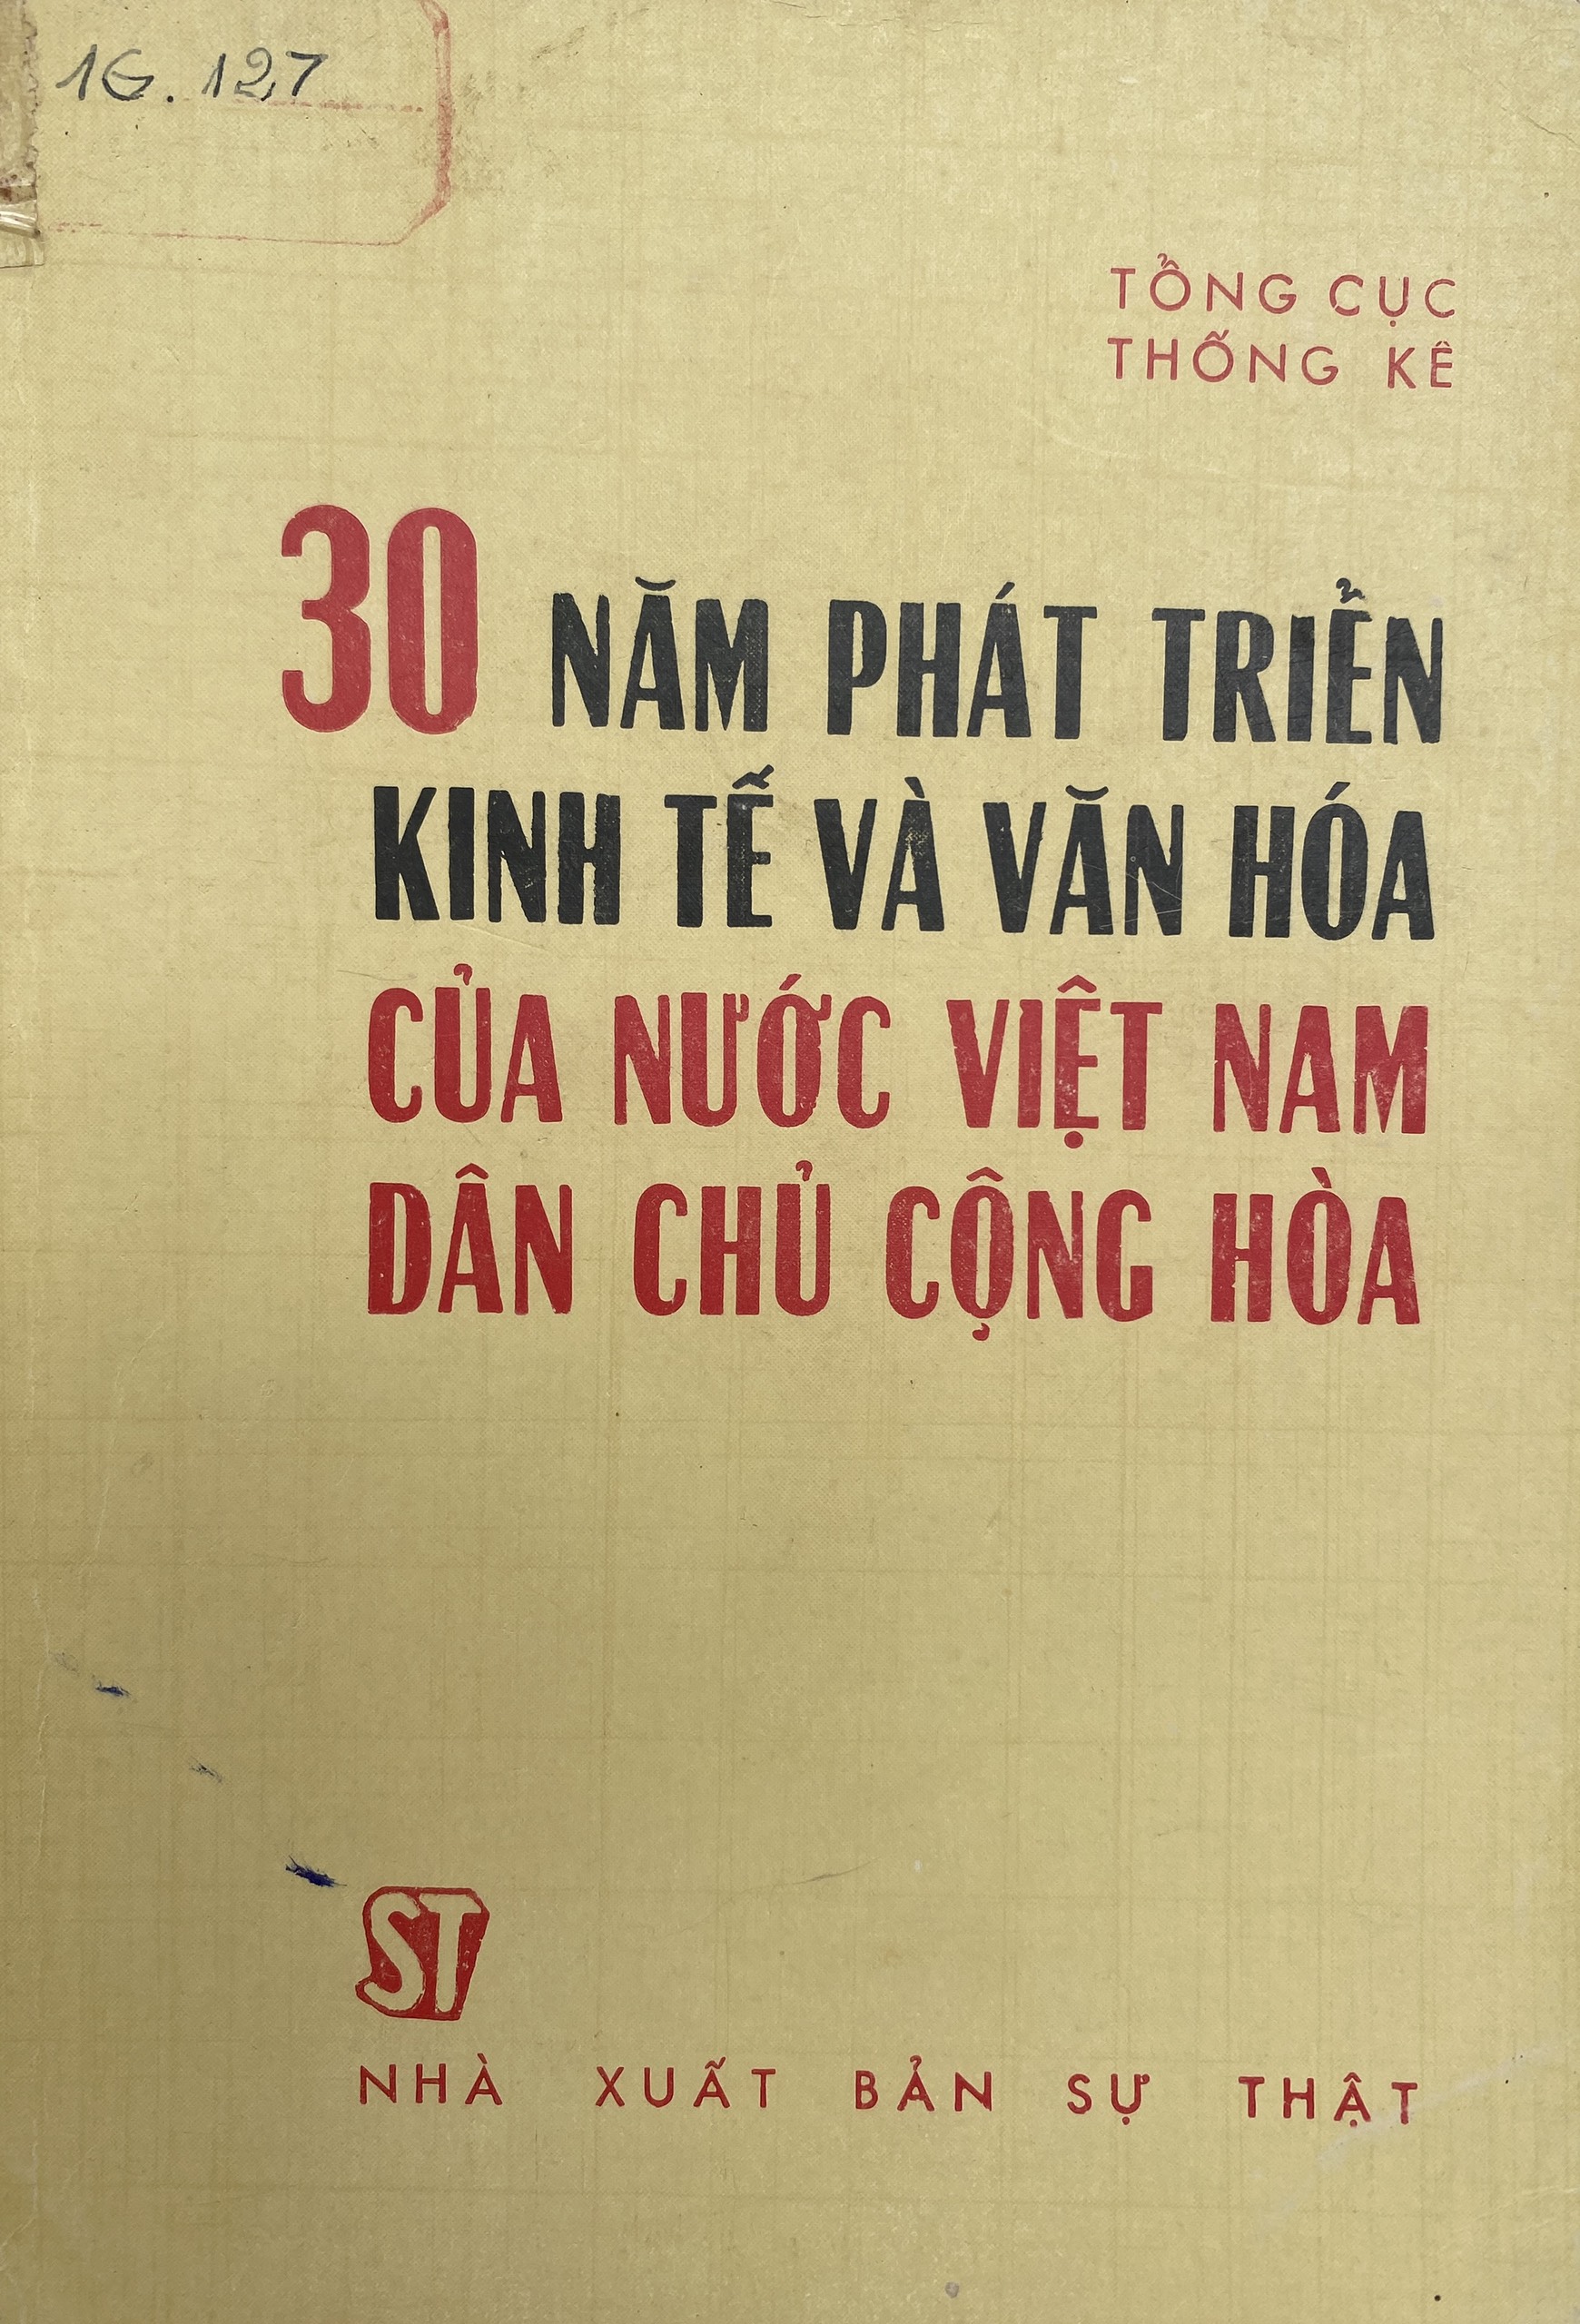 30 năm phát triển kinh tế và văn hóa của nước Việt Nam Dân chủ Cộng hòa